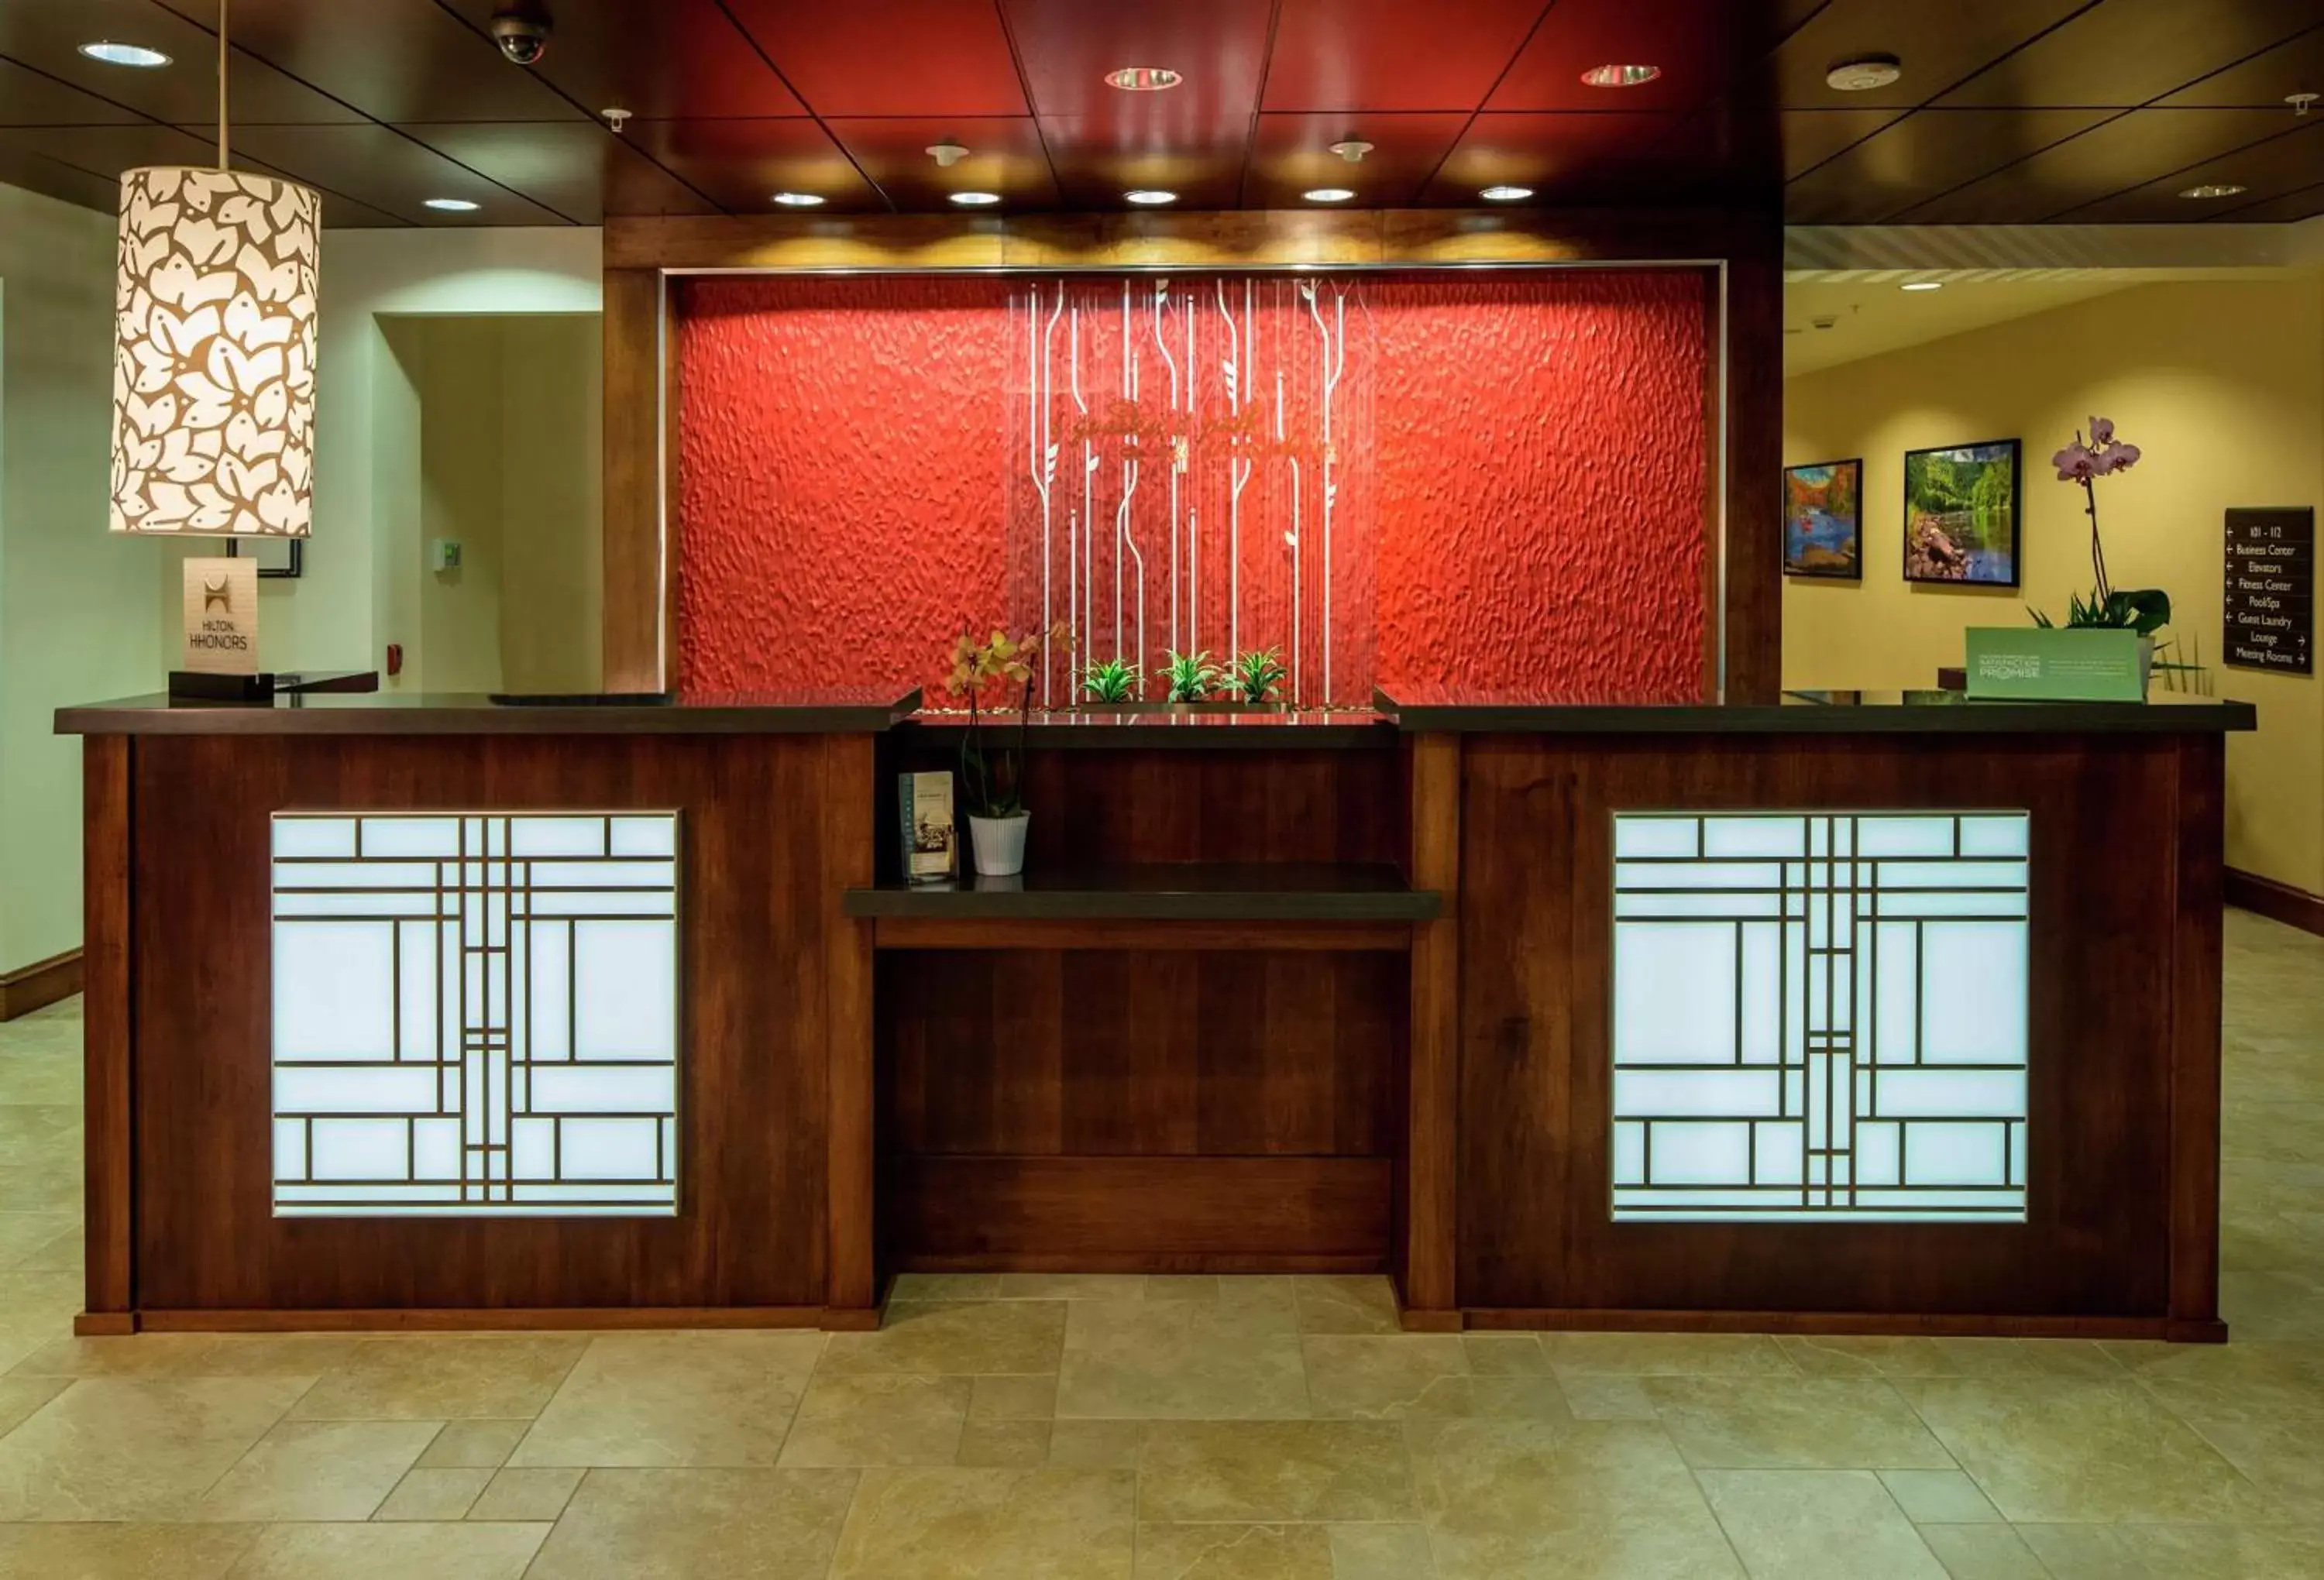 Lobby or reception, Lobby/Reception in Hilton Garden Inn Uniontown